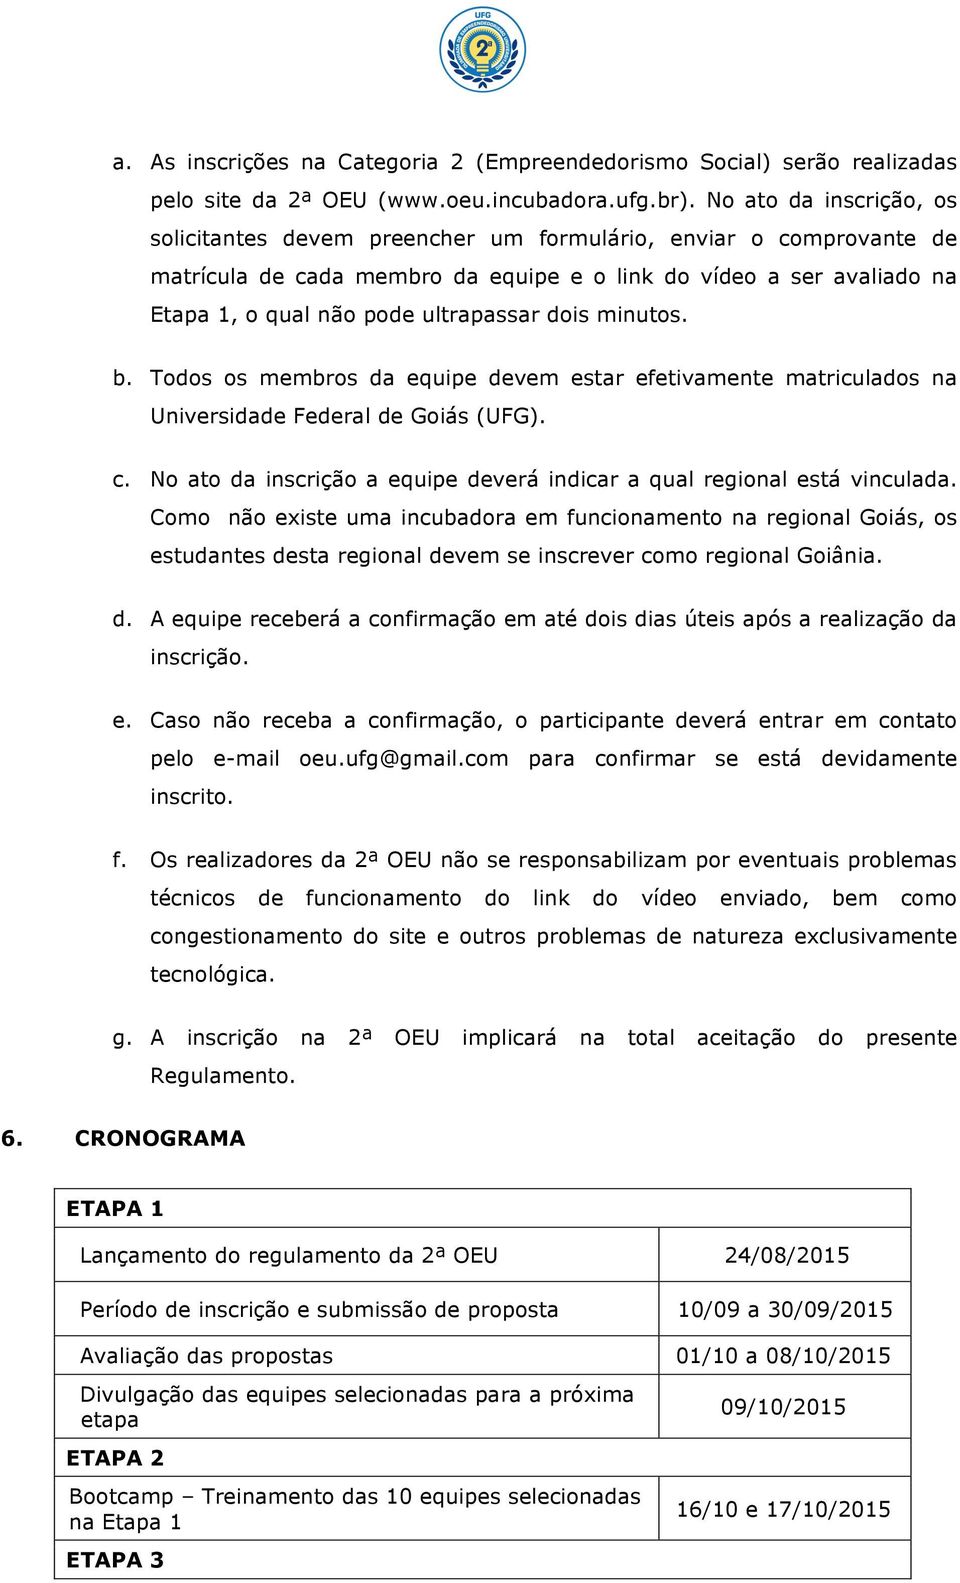 dois minutos. b. Todos os membros da equipe devem estar efetivamente matriculados na Universidade Federal de Goiás (UFG). c. No ato da inscrição a equipe deverá indicar a qual regional está vinculada.